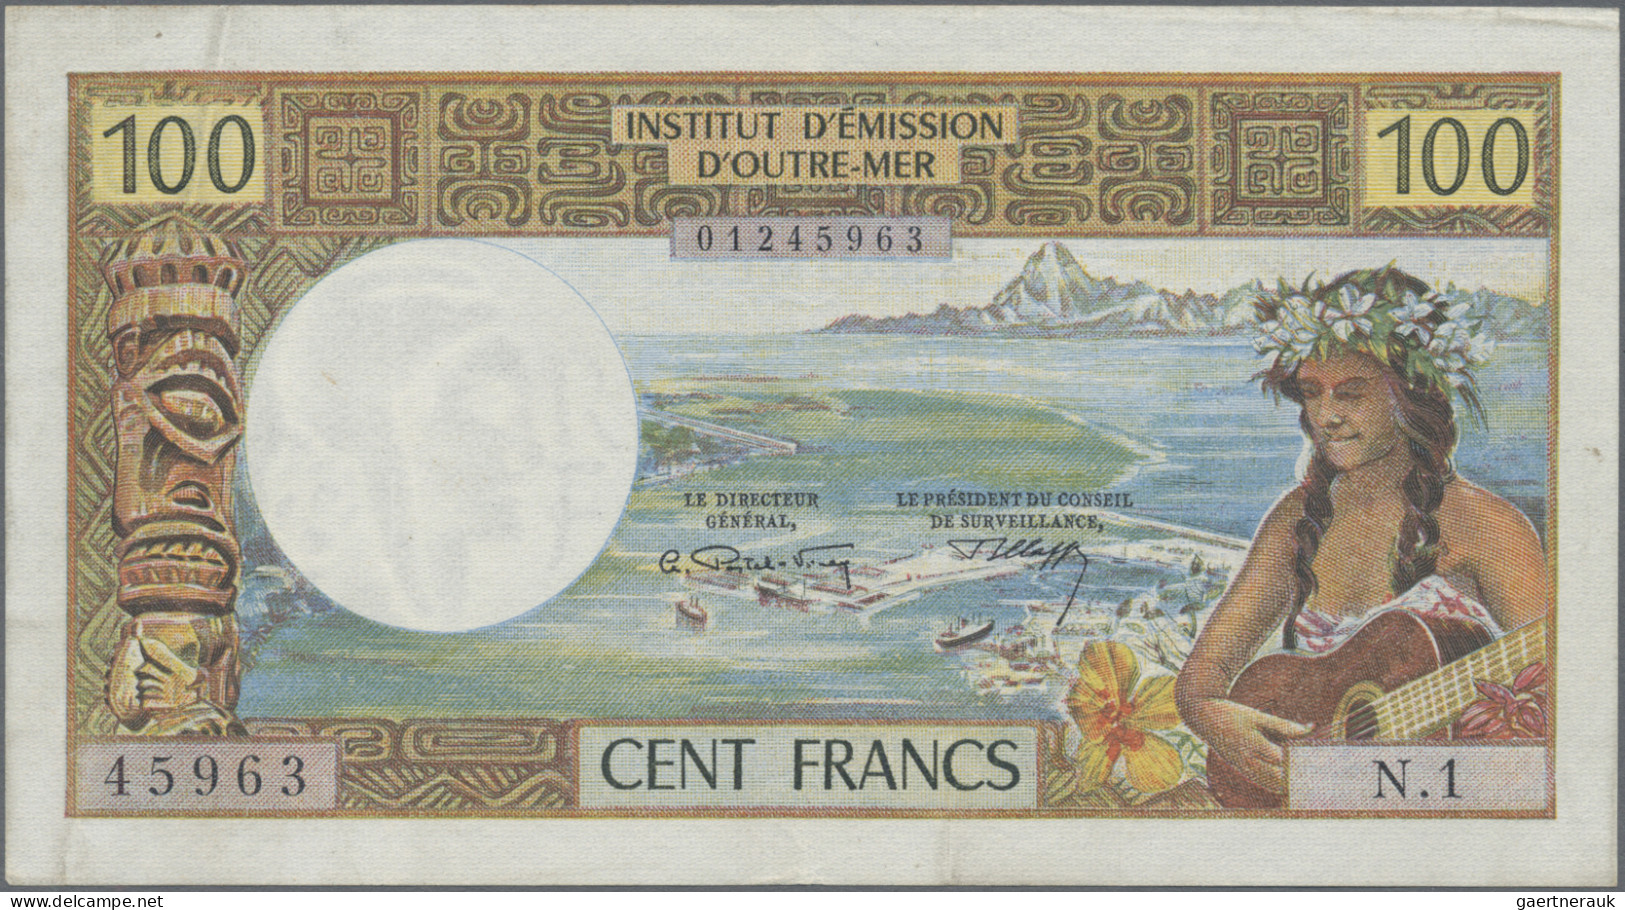 New Caledonia: Institut D'Émission D'Outre-Mer – NOUMEA, Pair With 100 Francs ND - Nouméa (Neukaledonien 1873-1985)